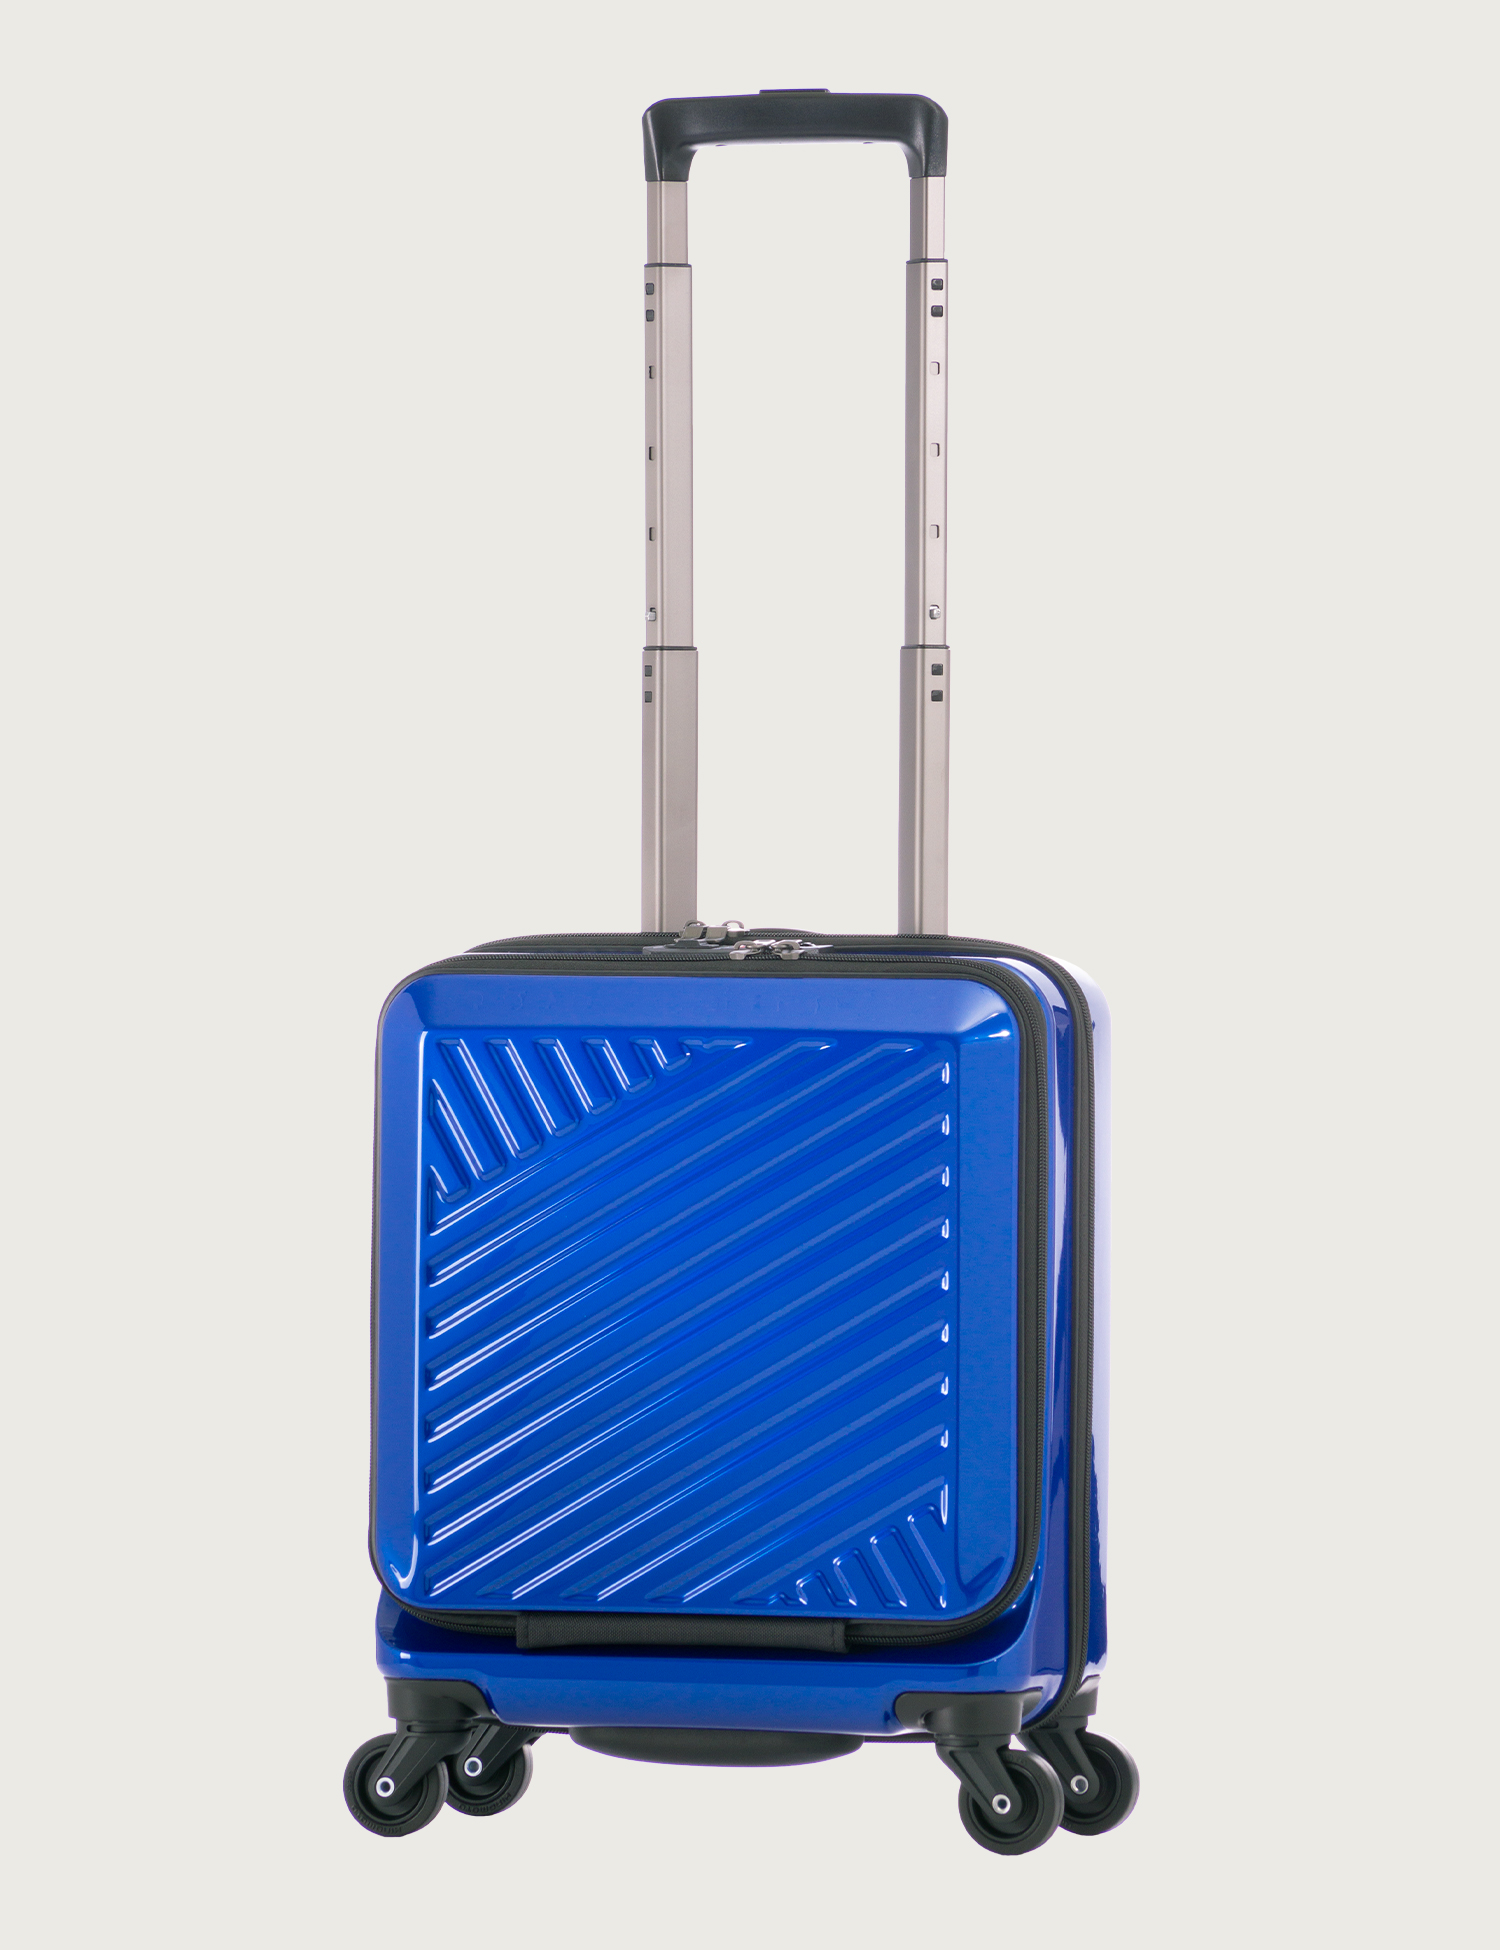 コインロッカータイプ | アジア・ラゲージ 公式サイト | Asia Luggage Inc.